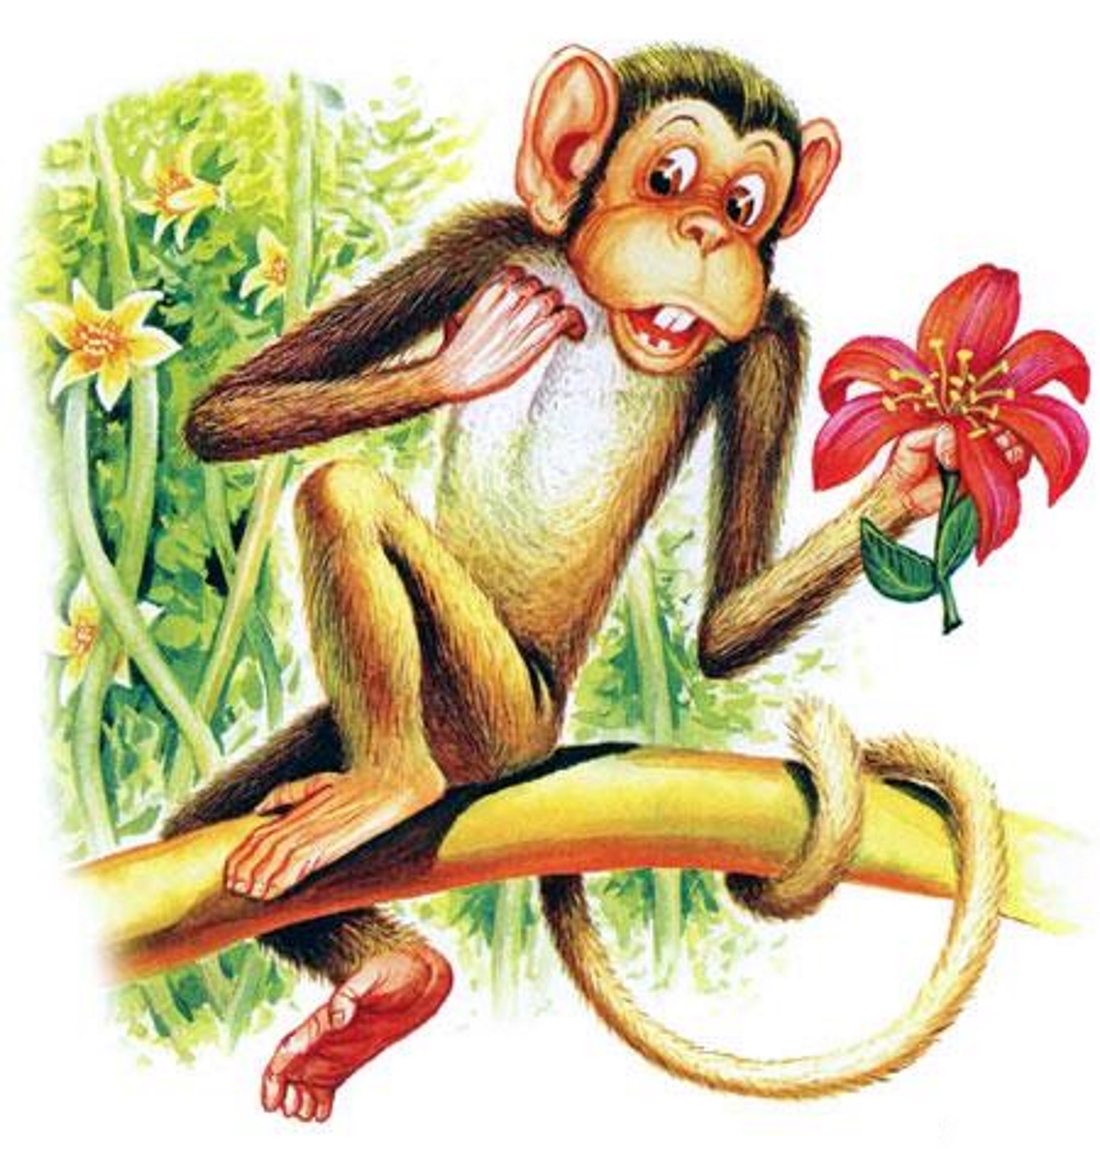 Житков про обезьянку какая обезьянка. Орис Житков «про обезьянку». Сказочная обезьянка. Иллюстрация к басне зеркало и обезьяна. Обезьяна из сказки.